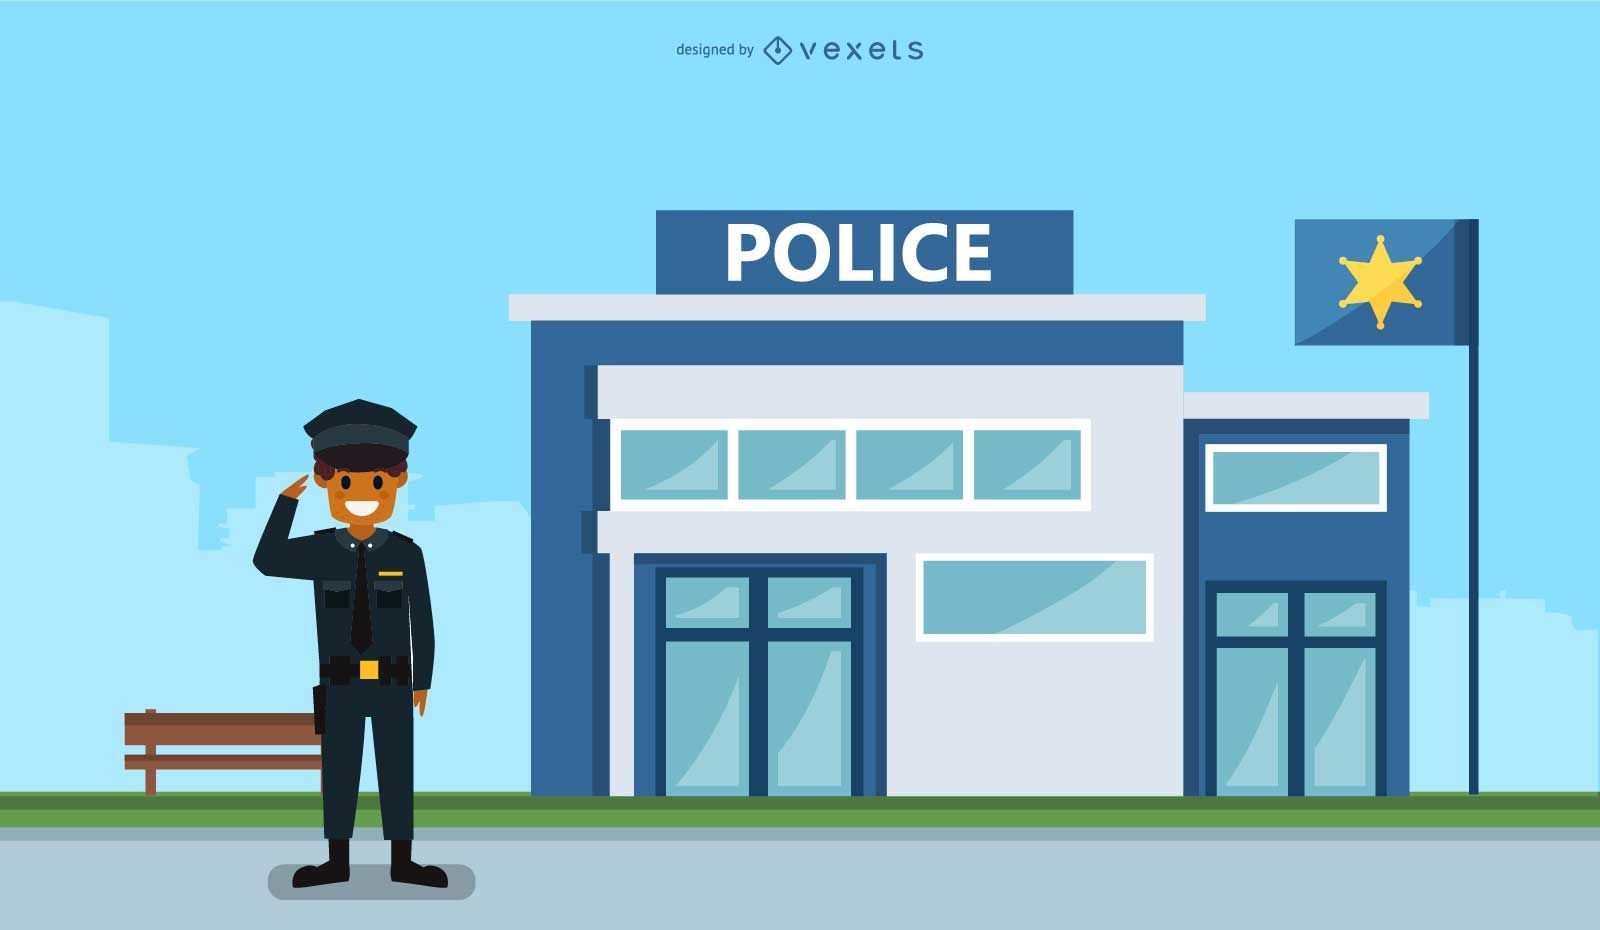 Police Station Illustration Vector Download